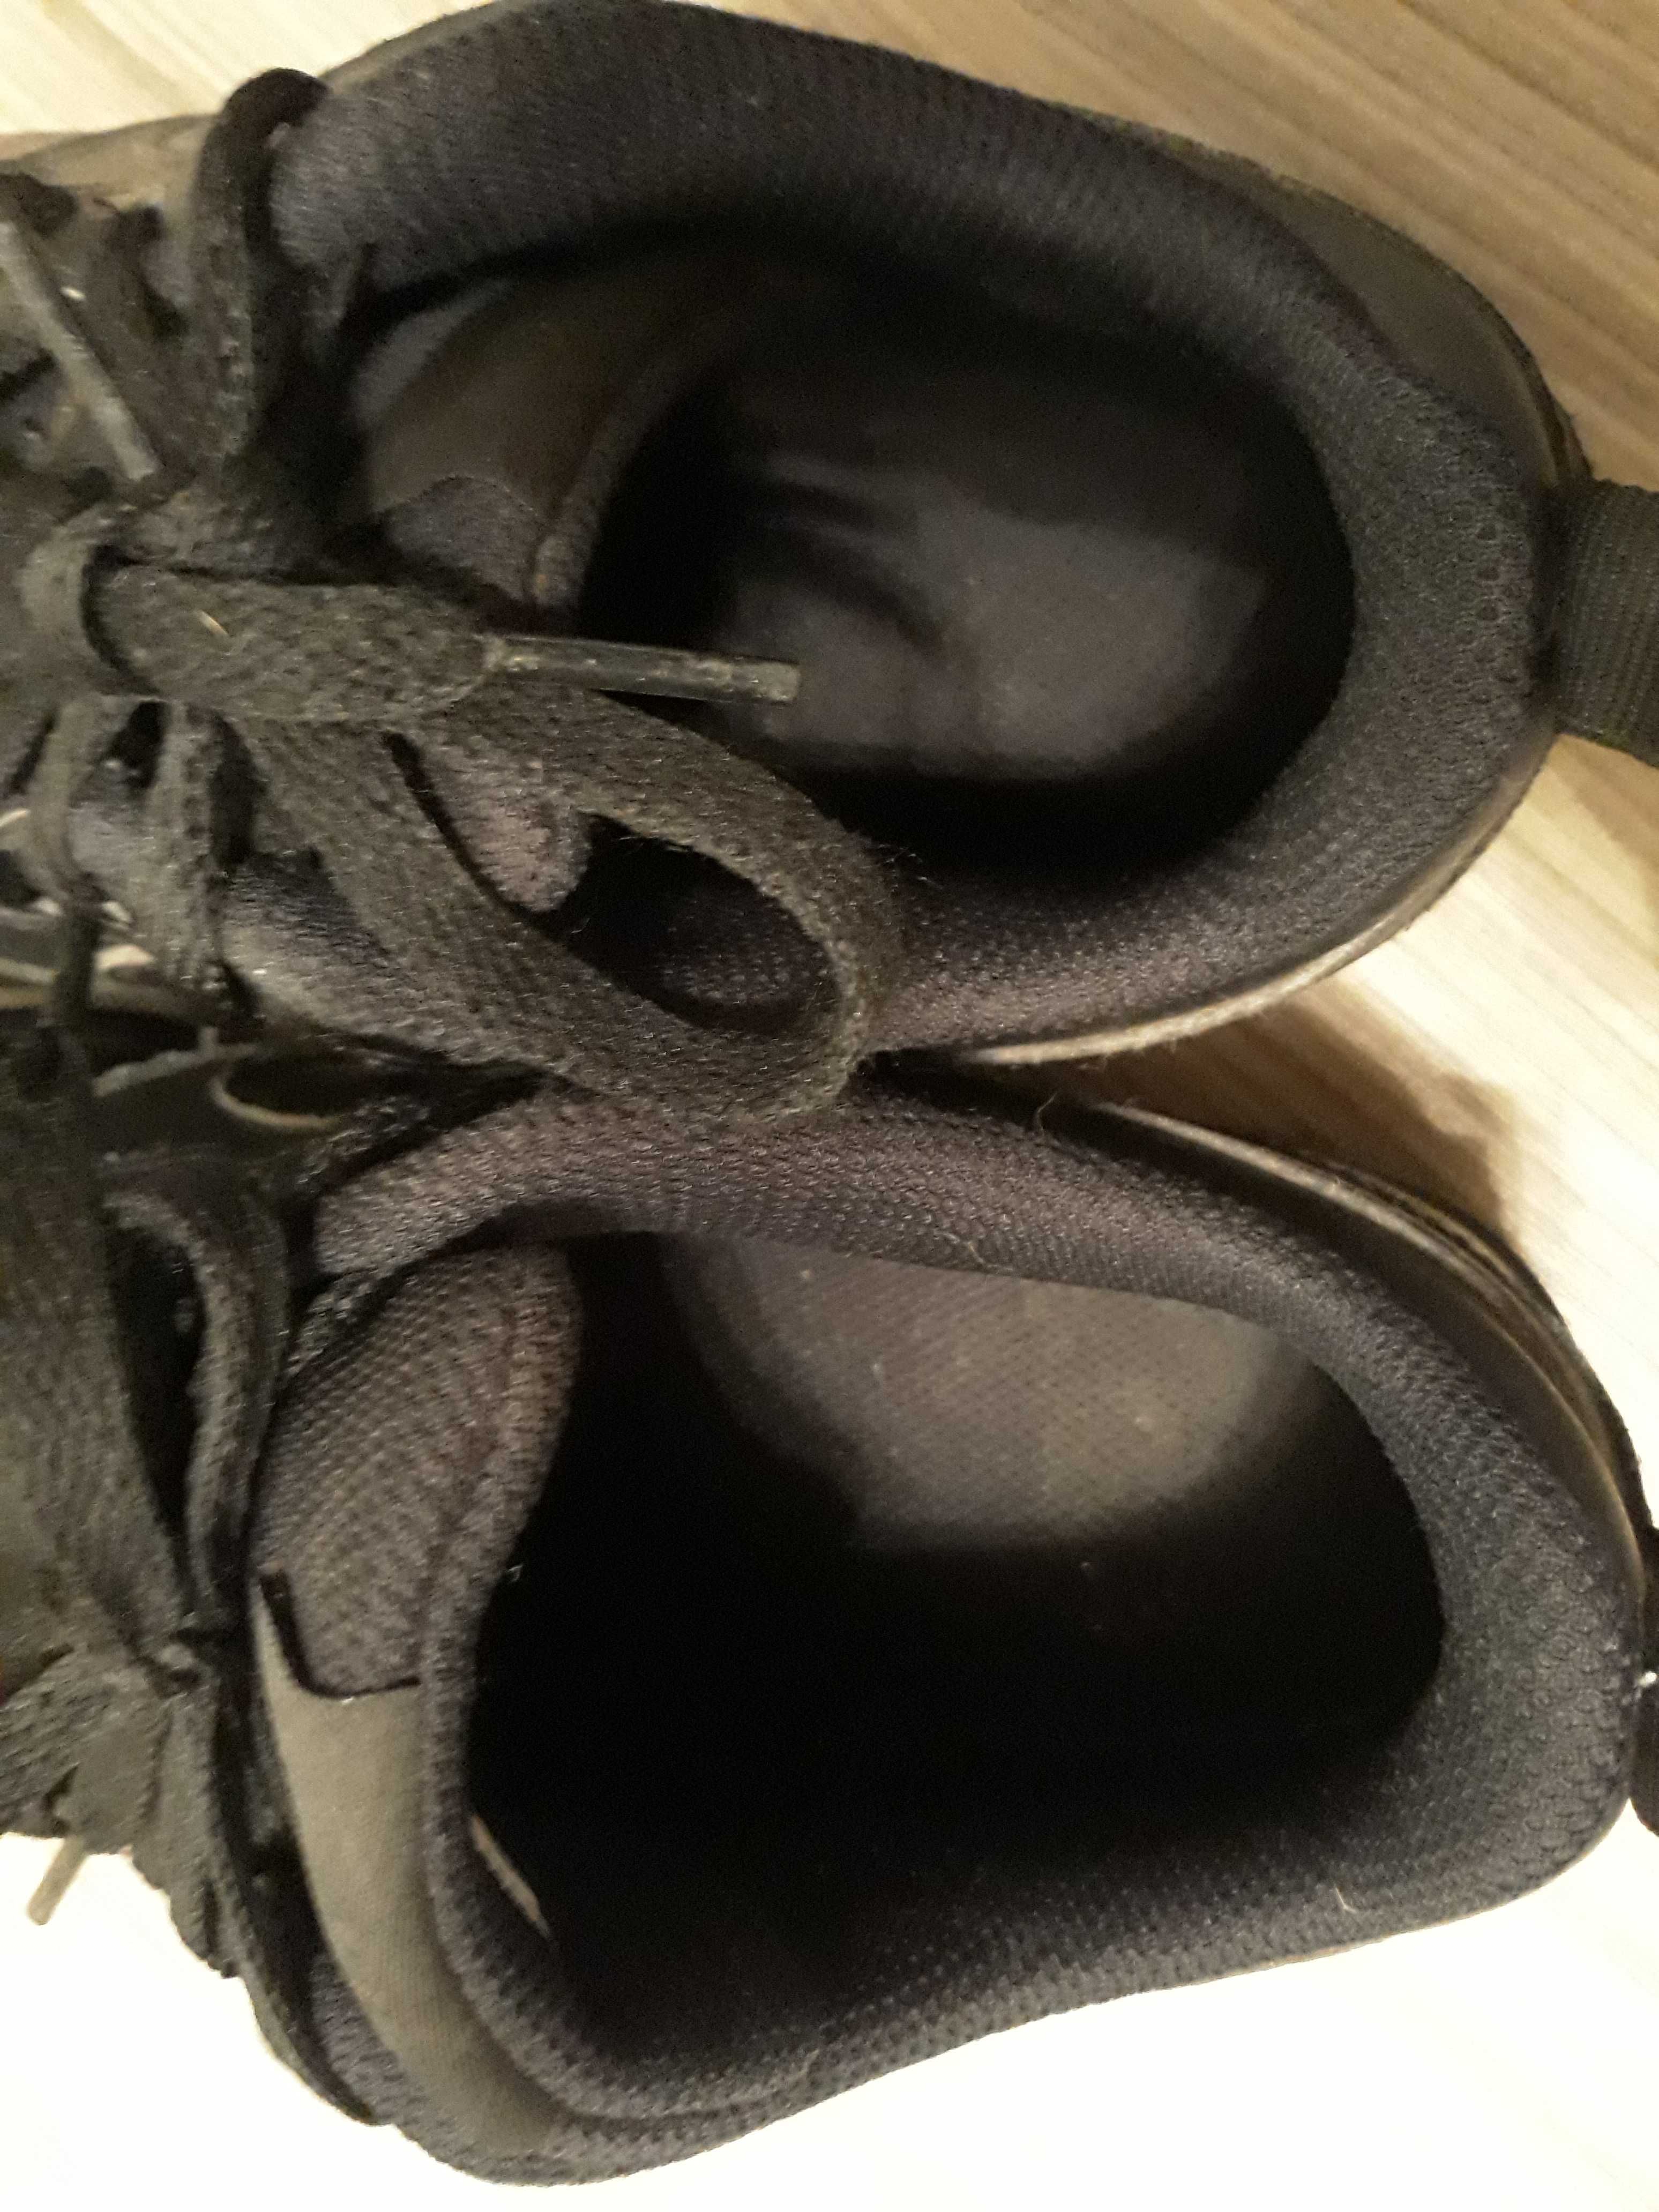 Buty Nike czarne klasyczne skórka rozm.38 dł wkładki 24 cm.